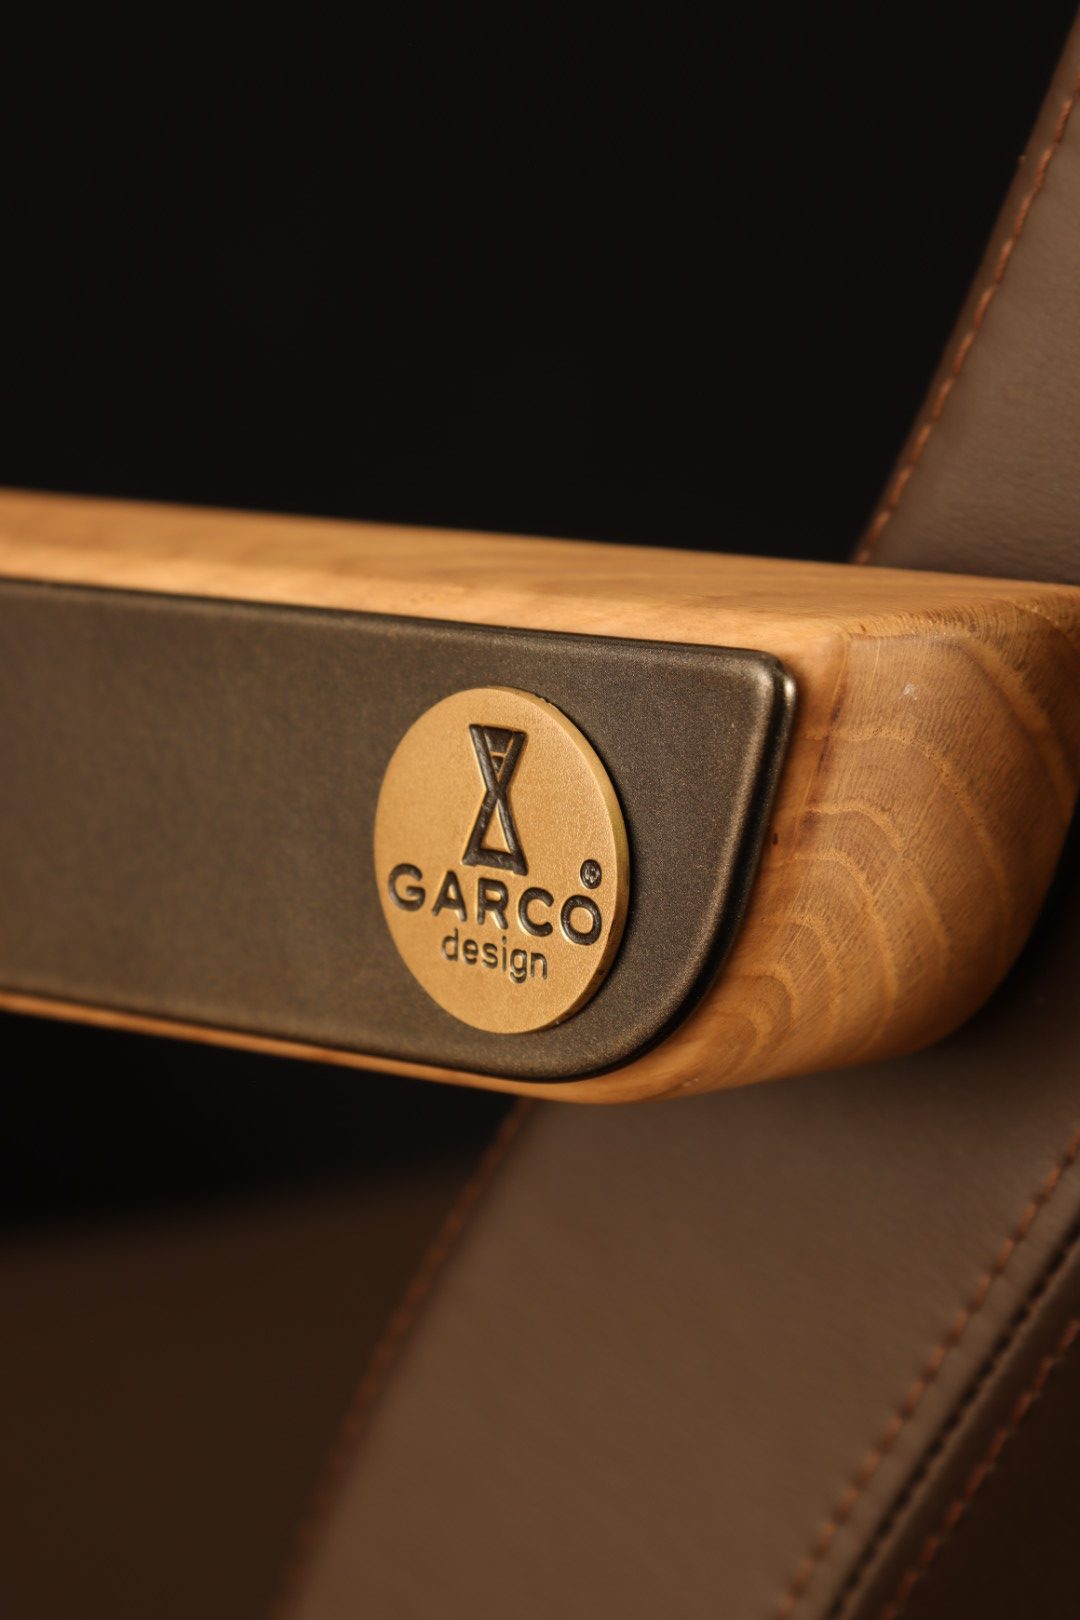 original design and details of GARCO design